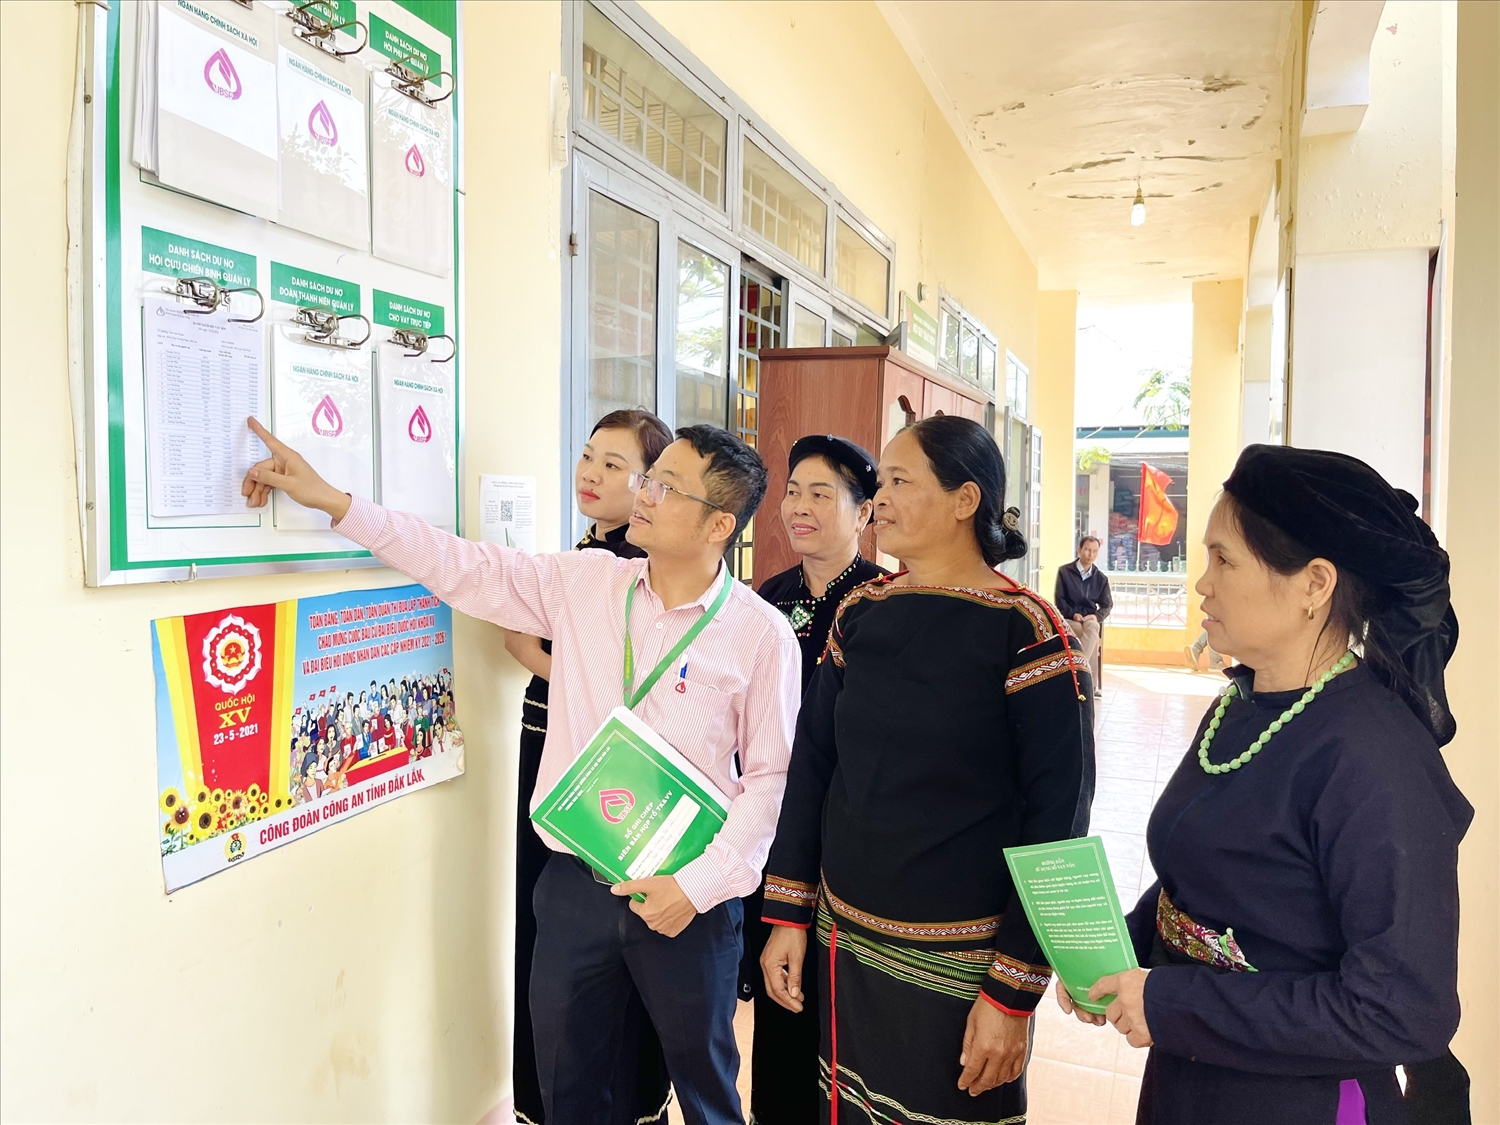 Can bộ Ngân hàng CSXH huyện Krông Năng, Đắk Lắk hướng dẫn người dân các chương trình vay vốn tại điểm niêm yết ở Điểm giao dịch xã 